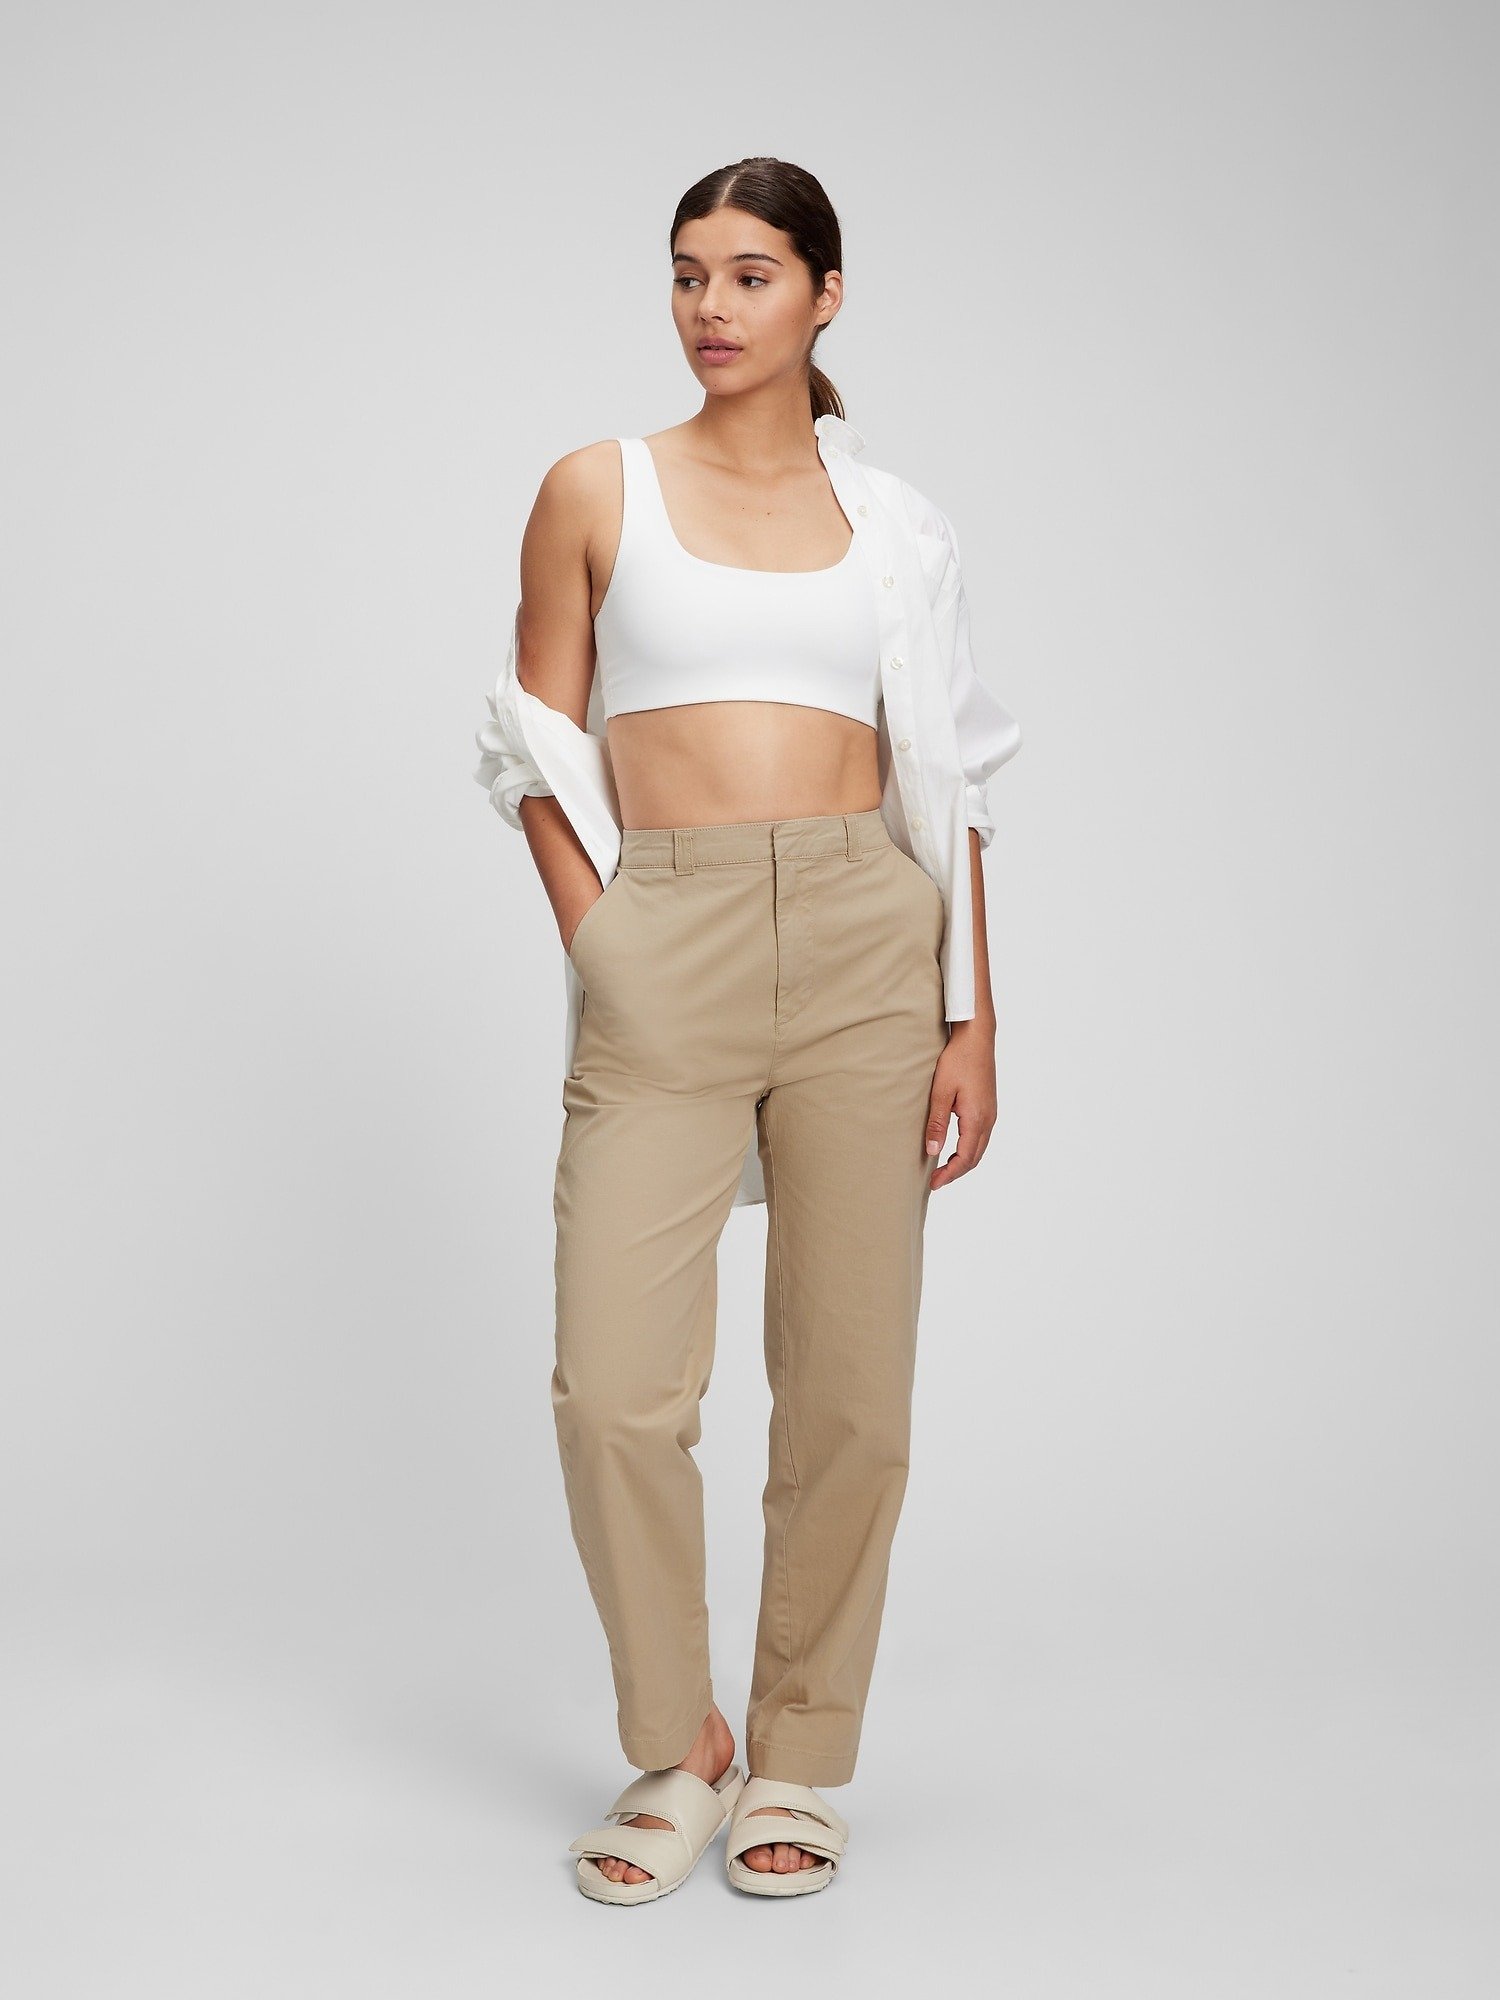 Straight Up Washwell Khaki Pantolon product image